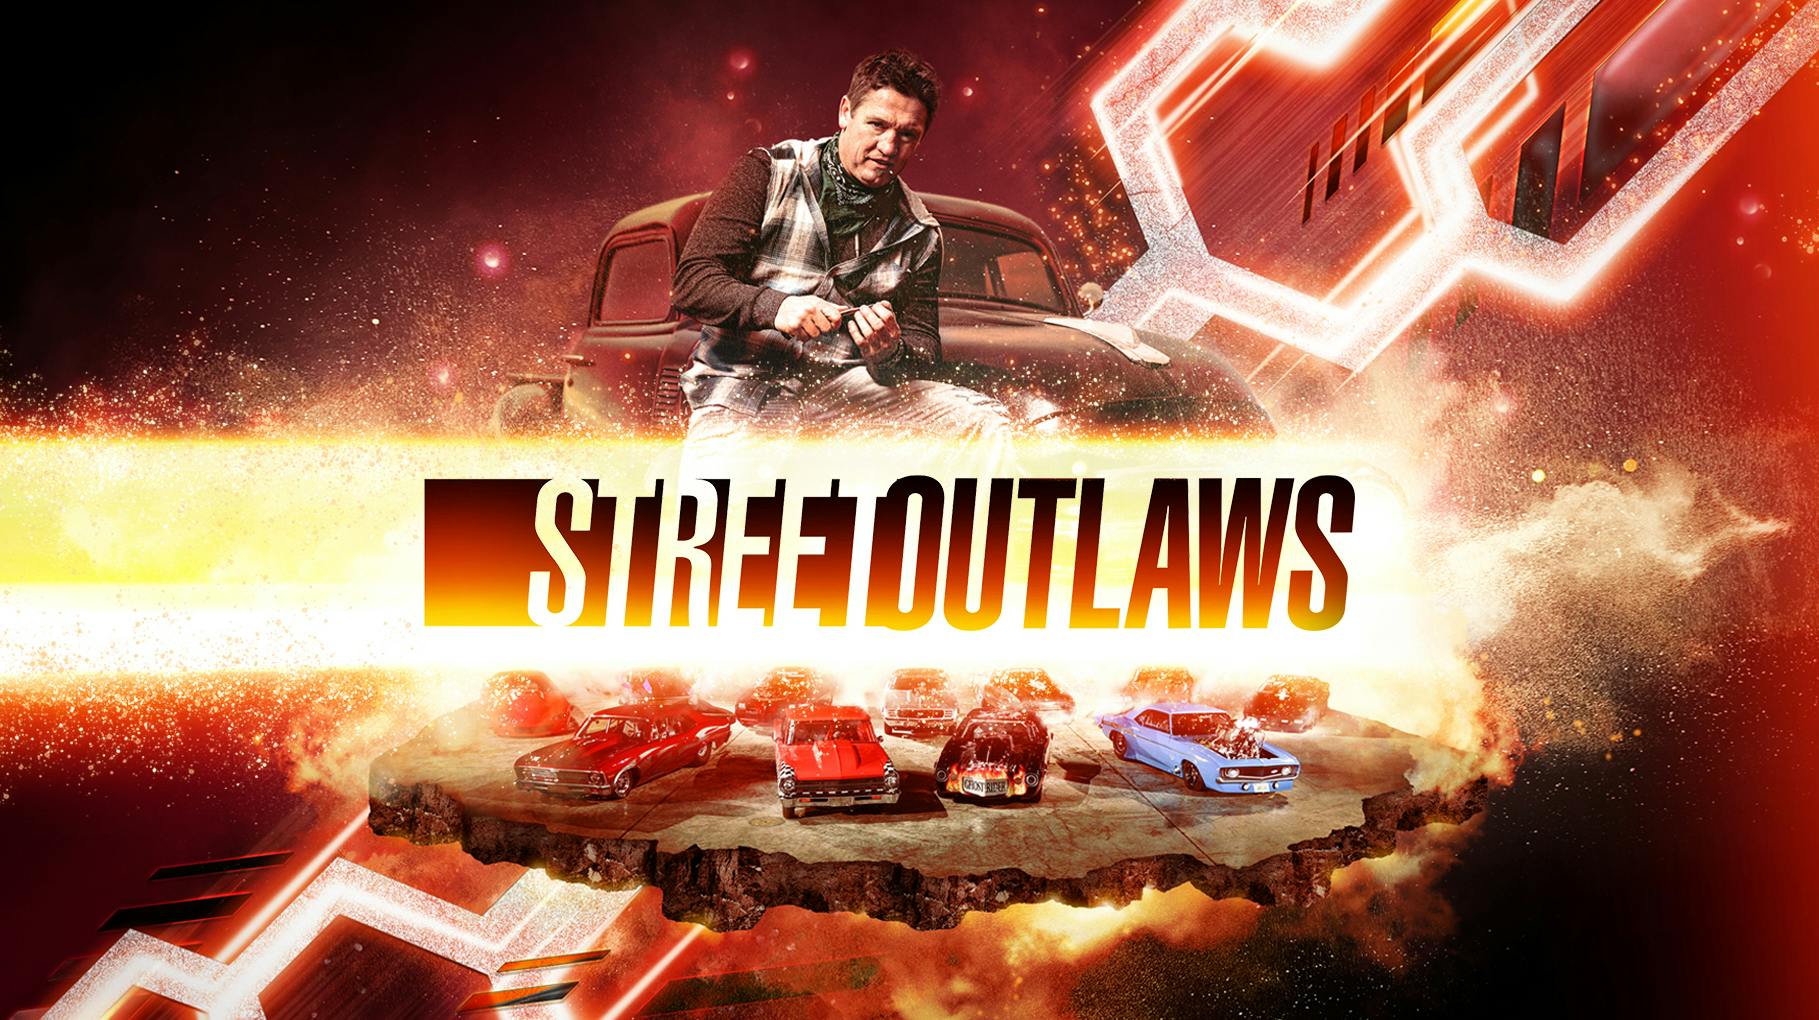 Ryan Fellows var en af stjernerne i programmet "Street Outlaws"